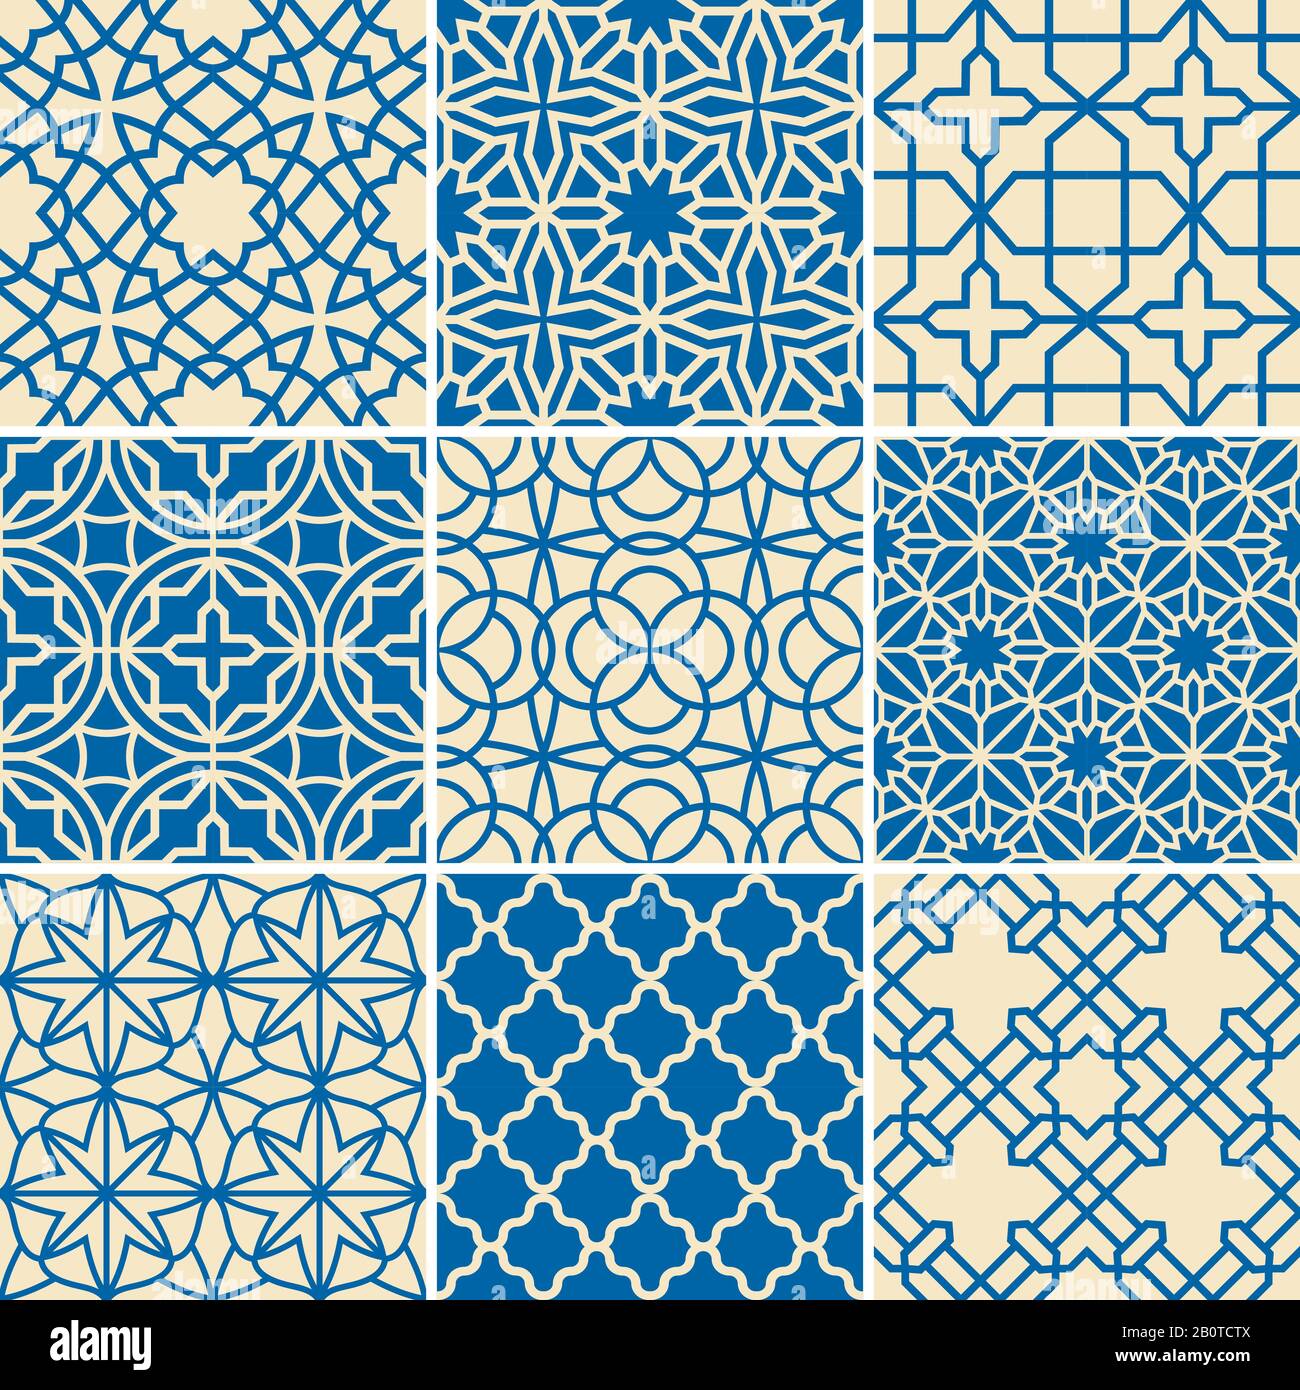 Türkische Textur Vektor halbfreie Muster. Islamisch arabisch wiederholte Hintergründe gesetzt. Abbildung: Sammlung arabischer Muster Stock Vektor